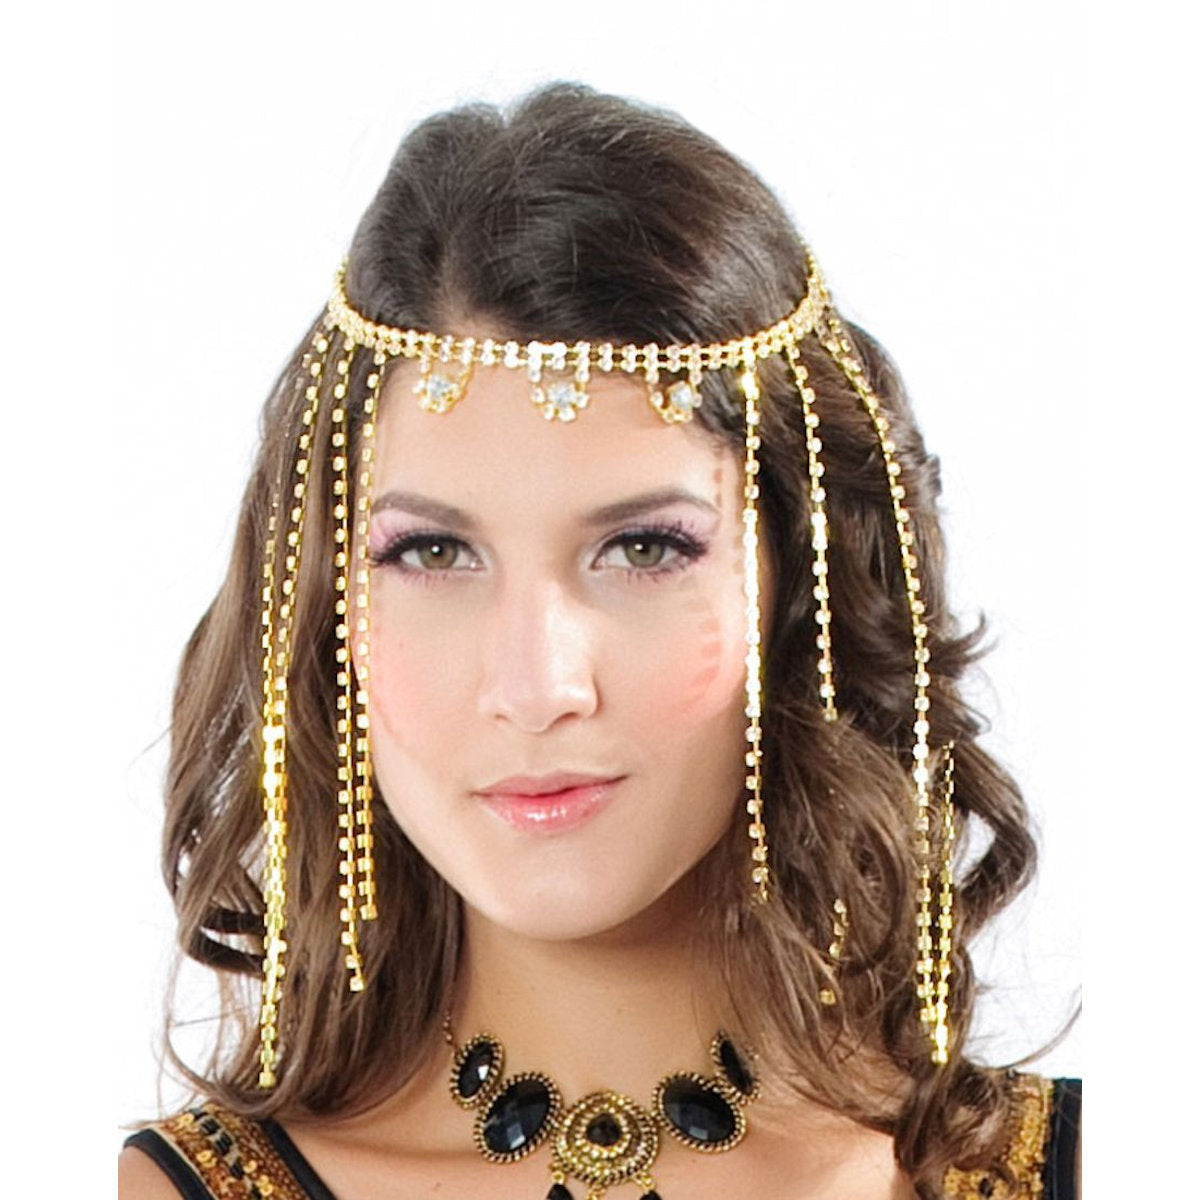 Golden Cleopatra Goddess Deluxe Sequin Women's Costume with Headpiece